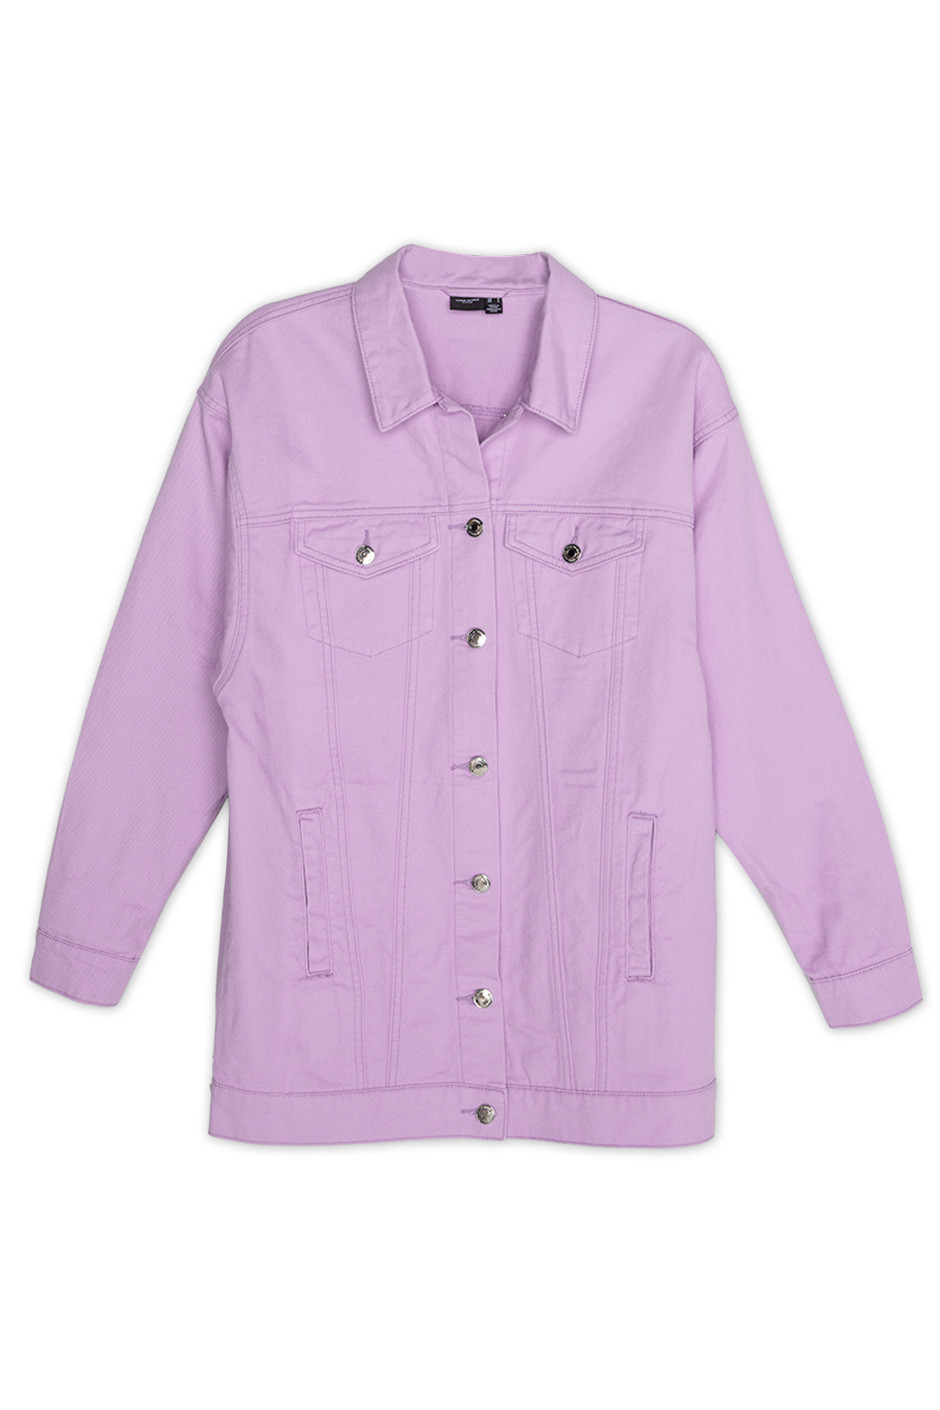 Purple “BNW” Contrast Stich Jeans Jacket